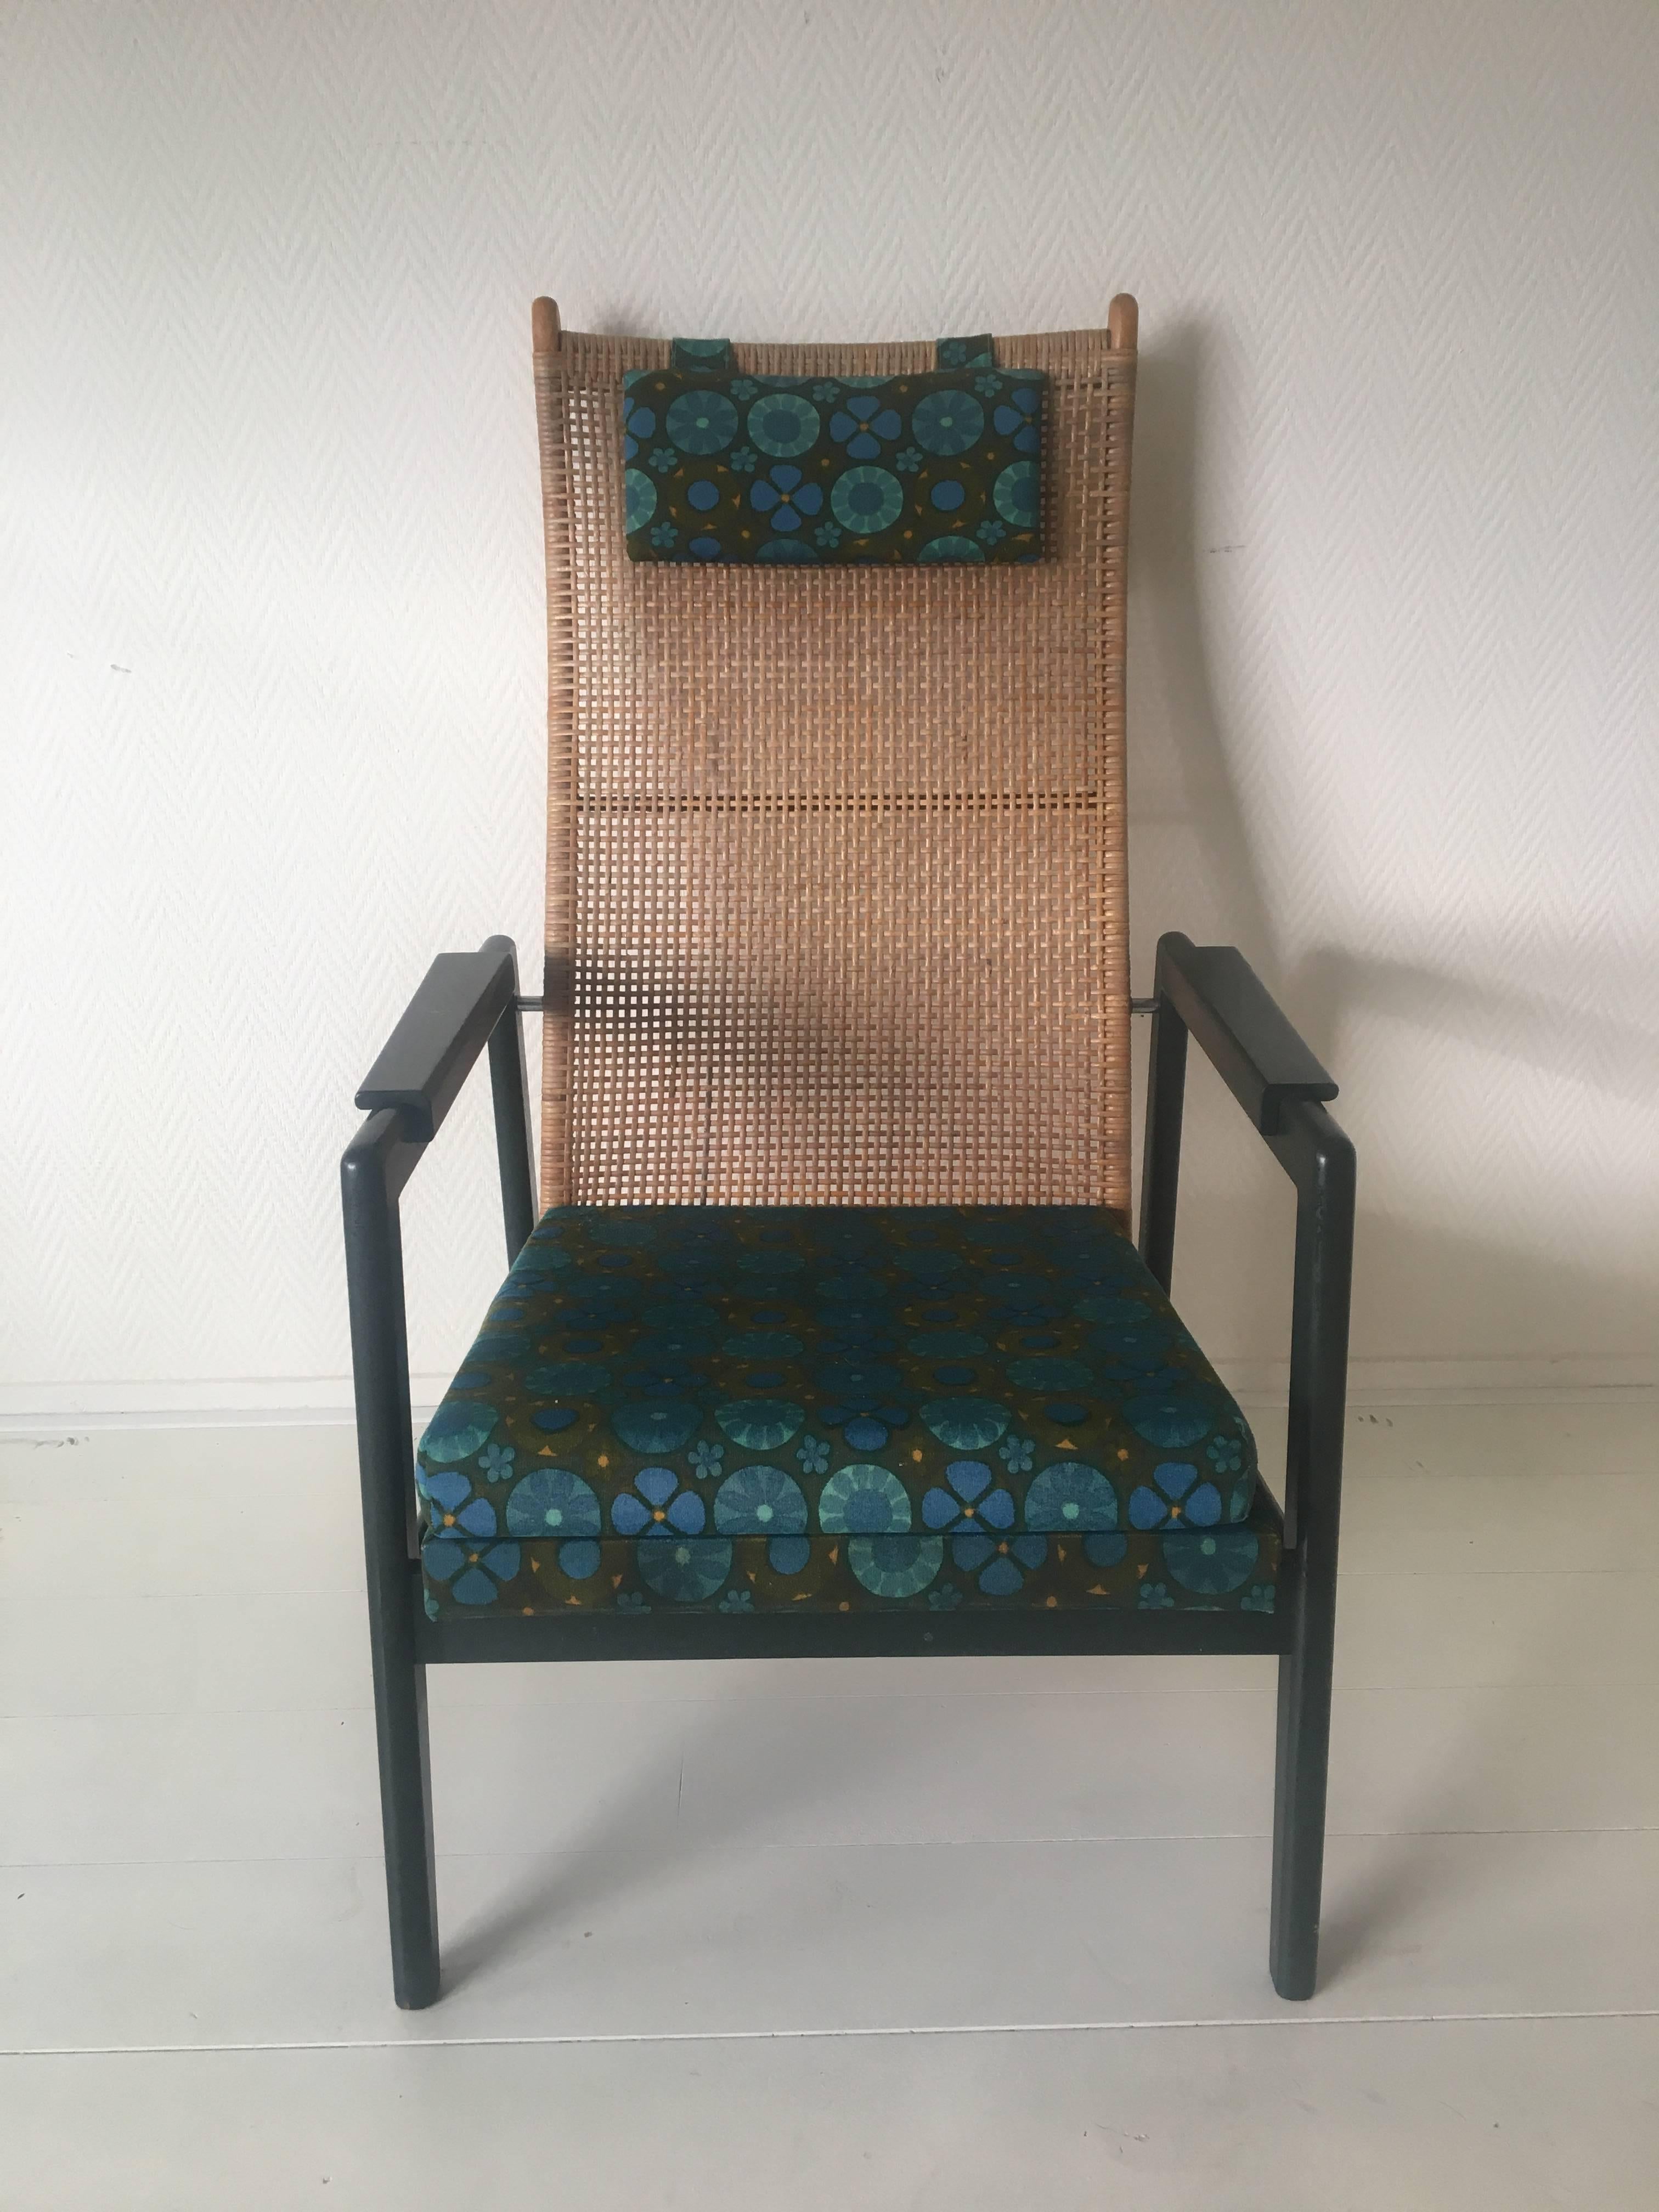 Dieser Sessel wurde in den 1950er-1960er Jahren von P. Muntendam für Jonkers entworfen. Es hat einen dunkelgrünen, original lackierten Holzrahmen und einen bedruckten Stoff im 